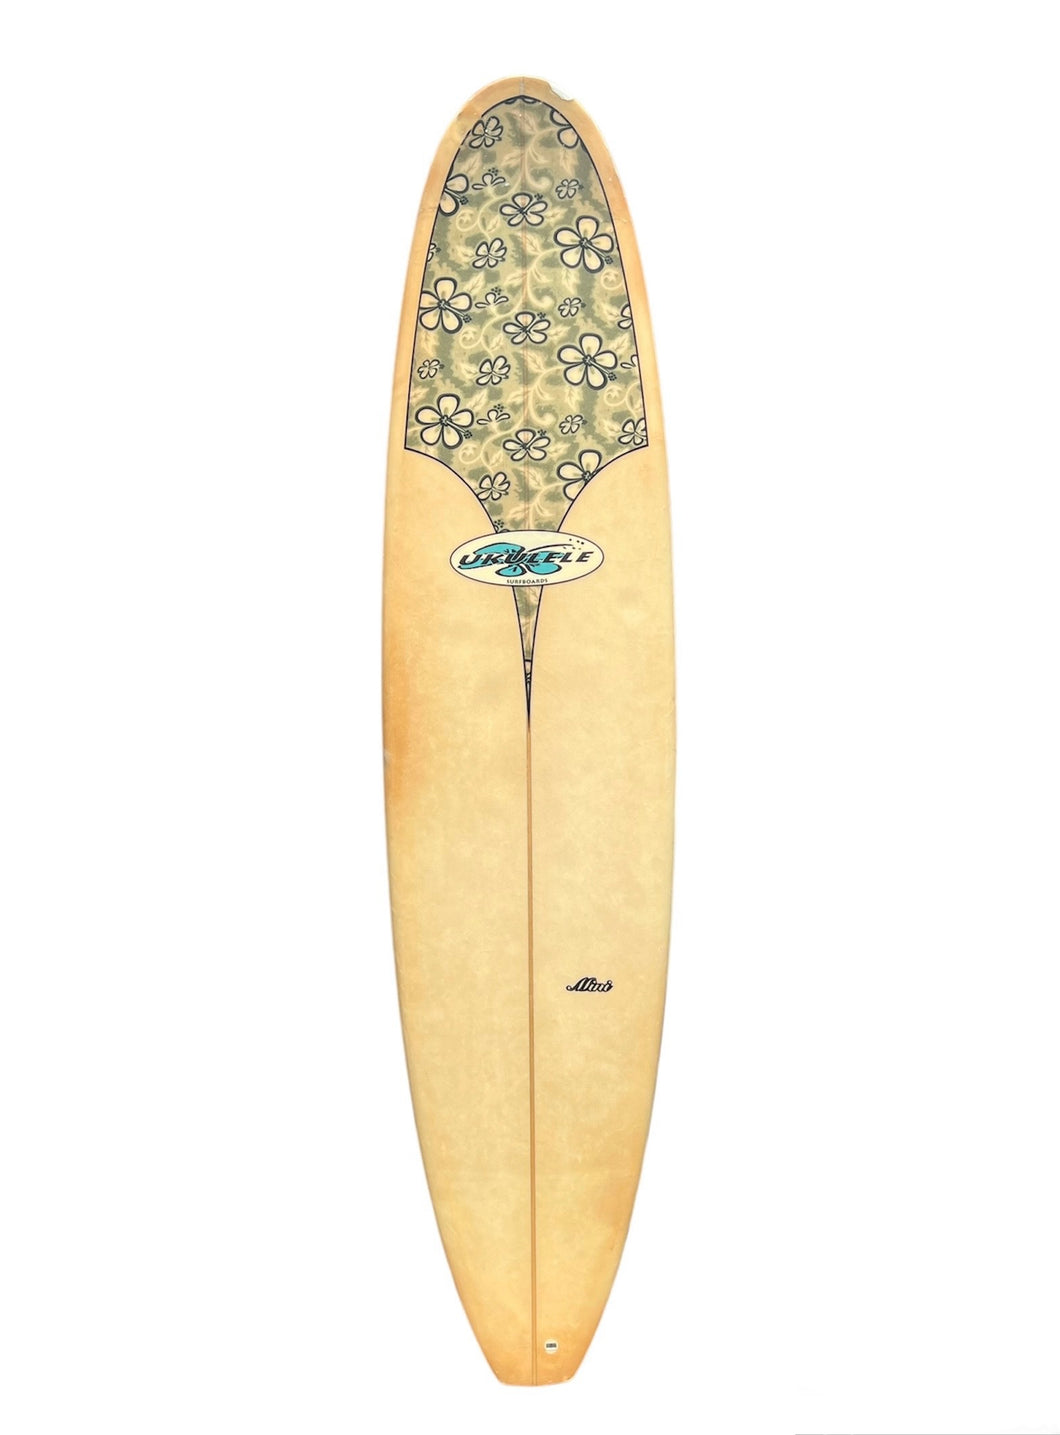 Used 7’6” Ukelele Surfboard Longboard